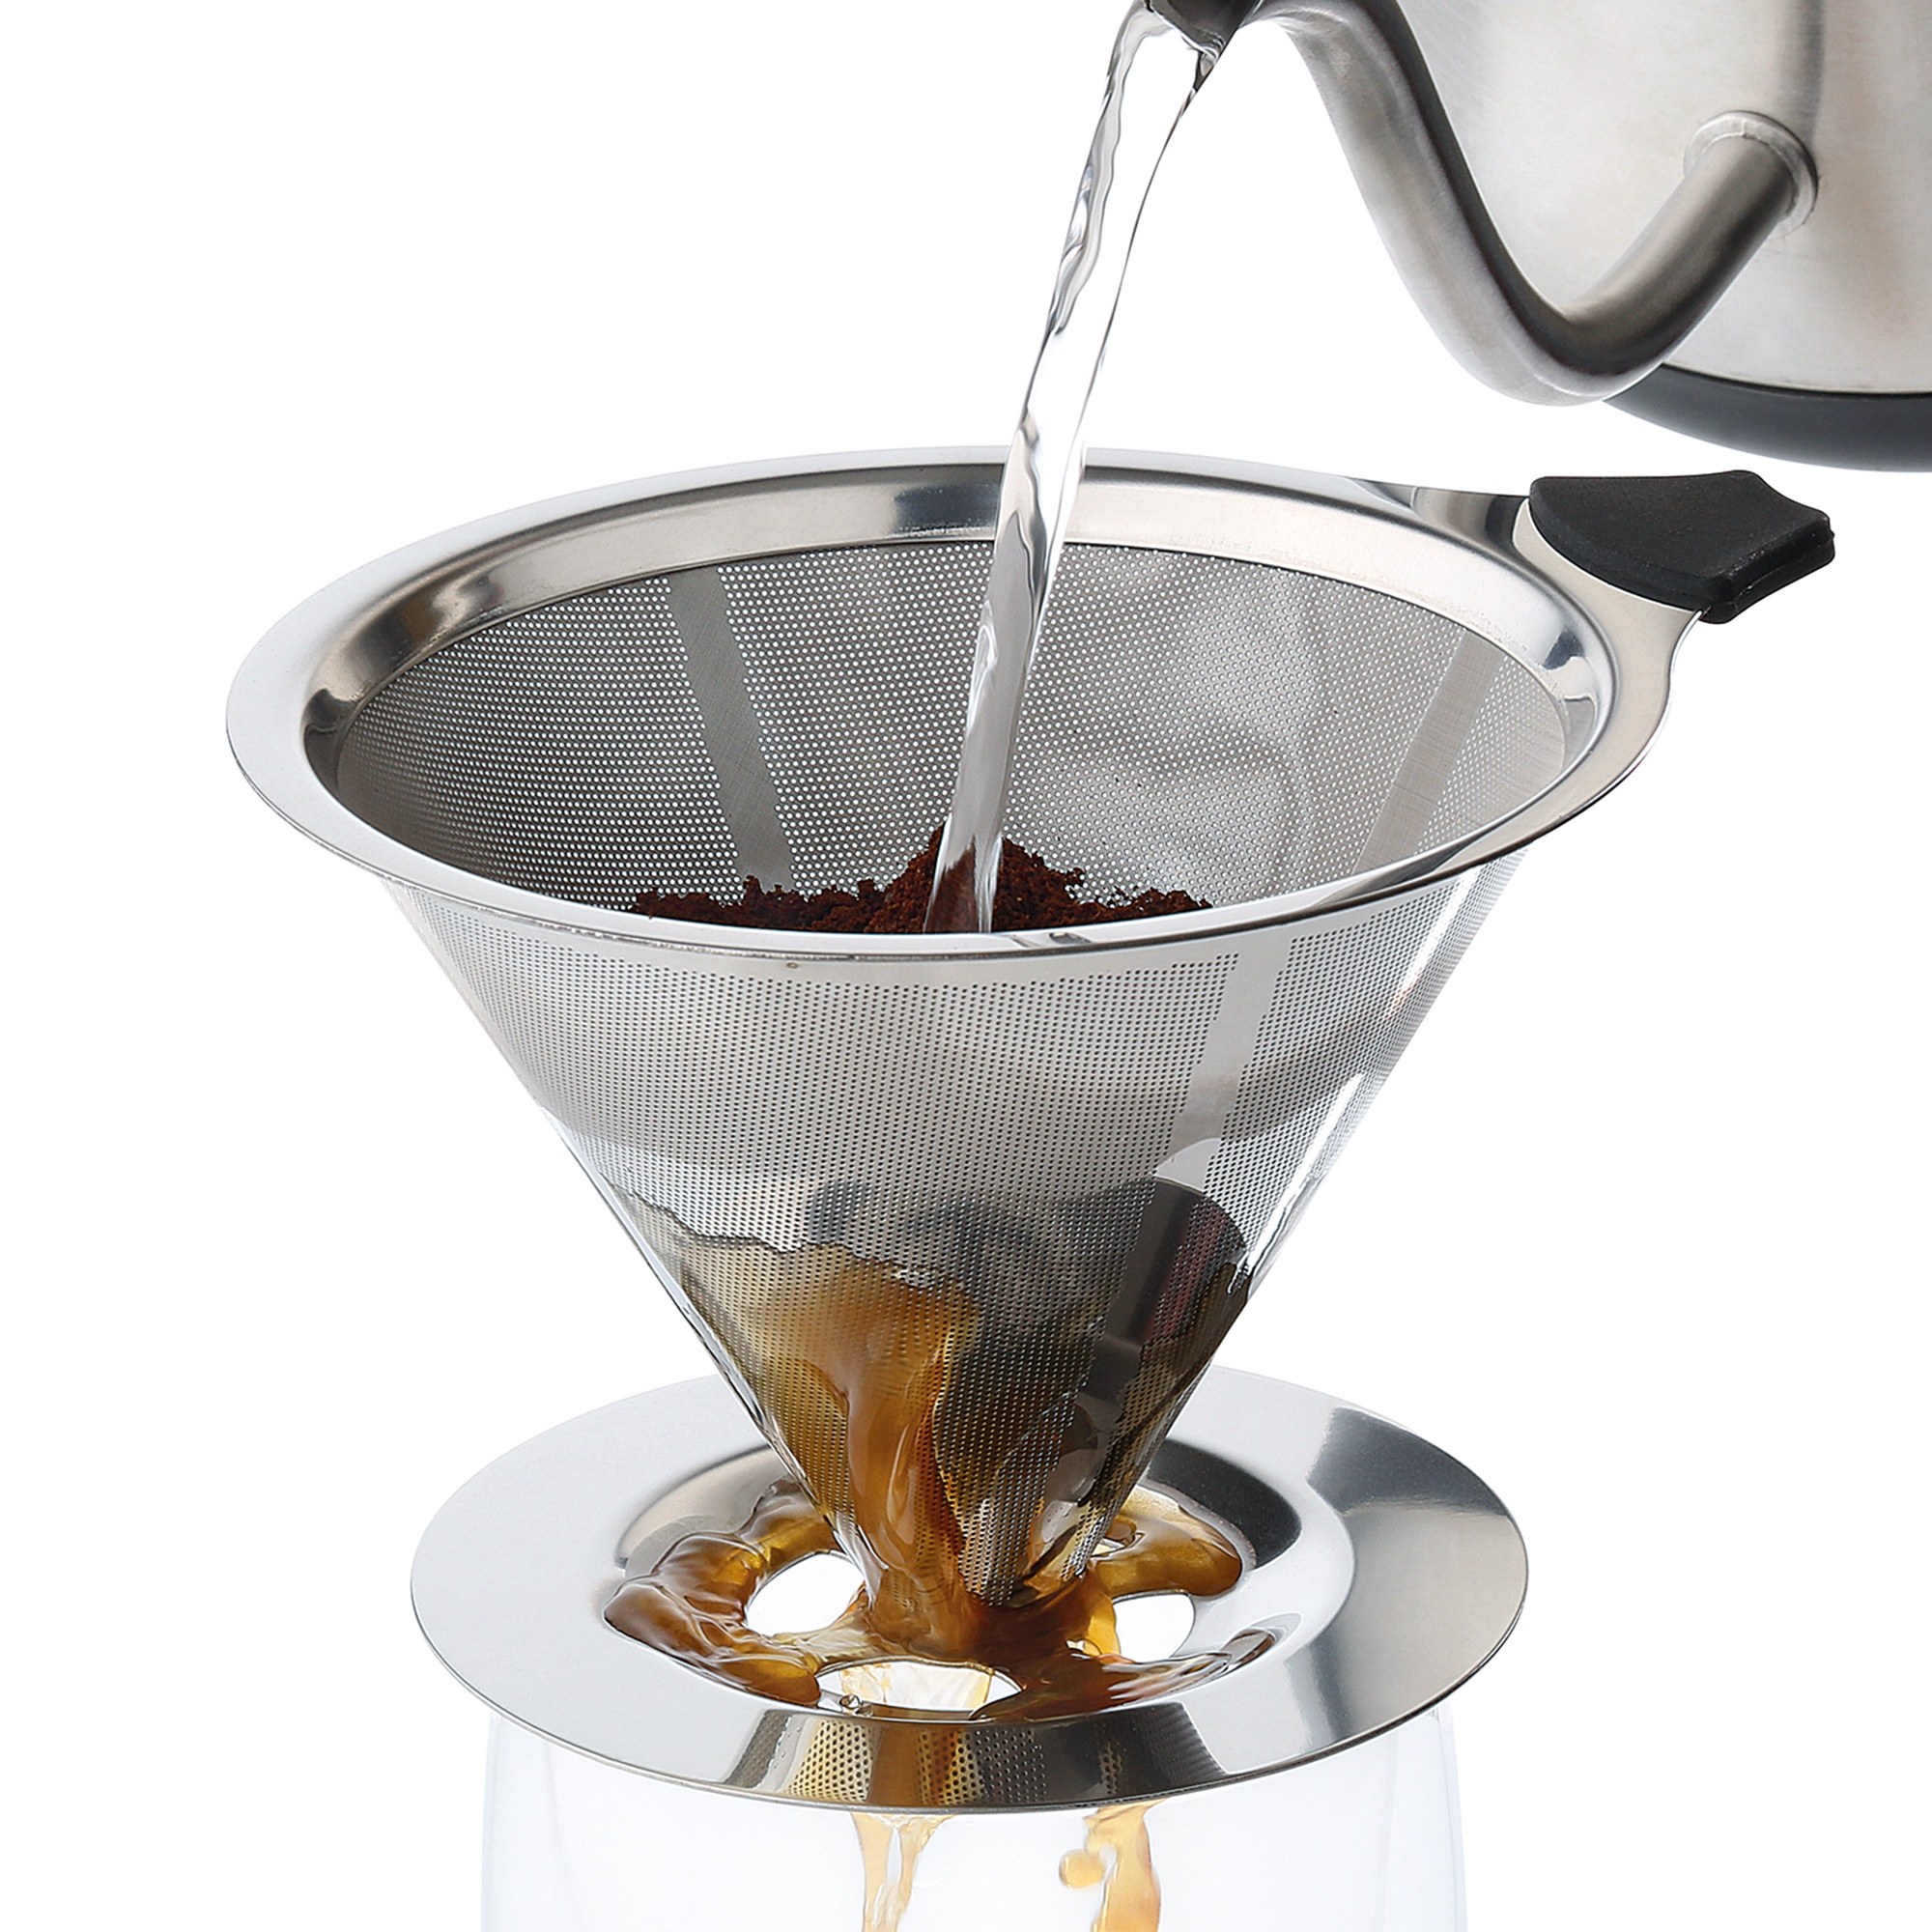 cilio - Edelstahl-Dauerfilter für Kaffee